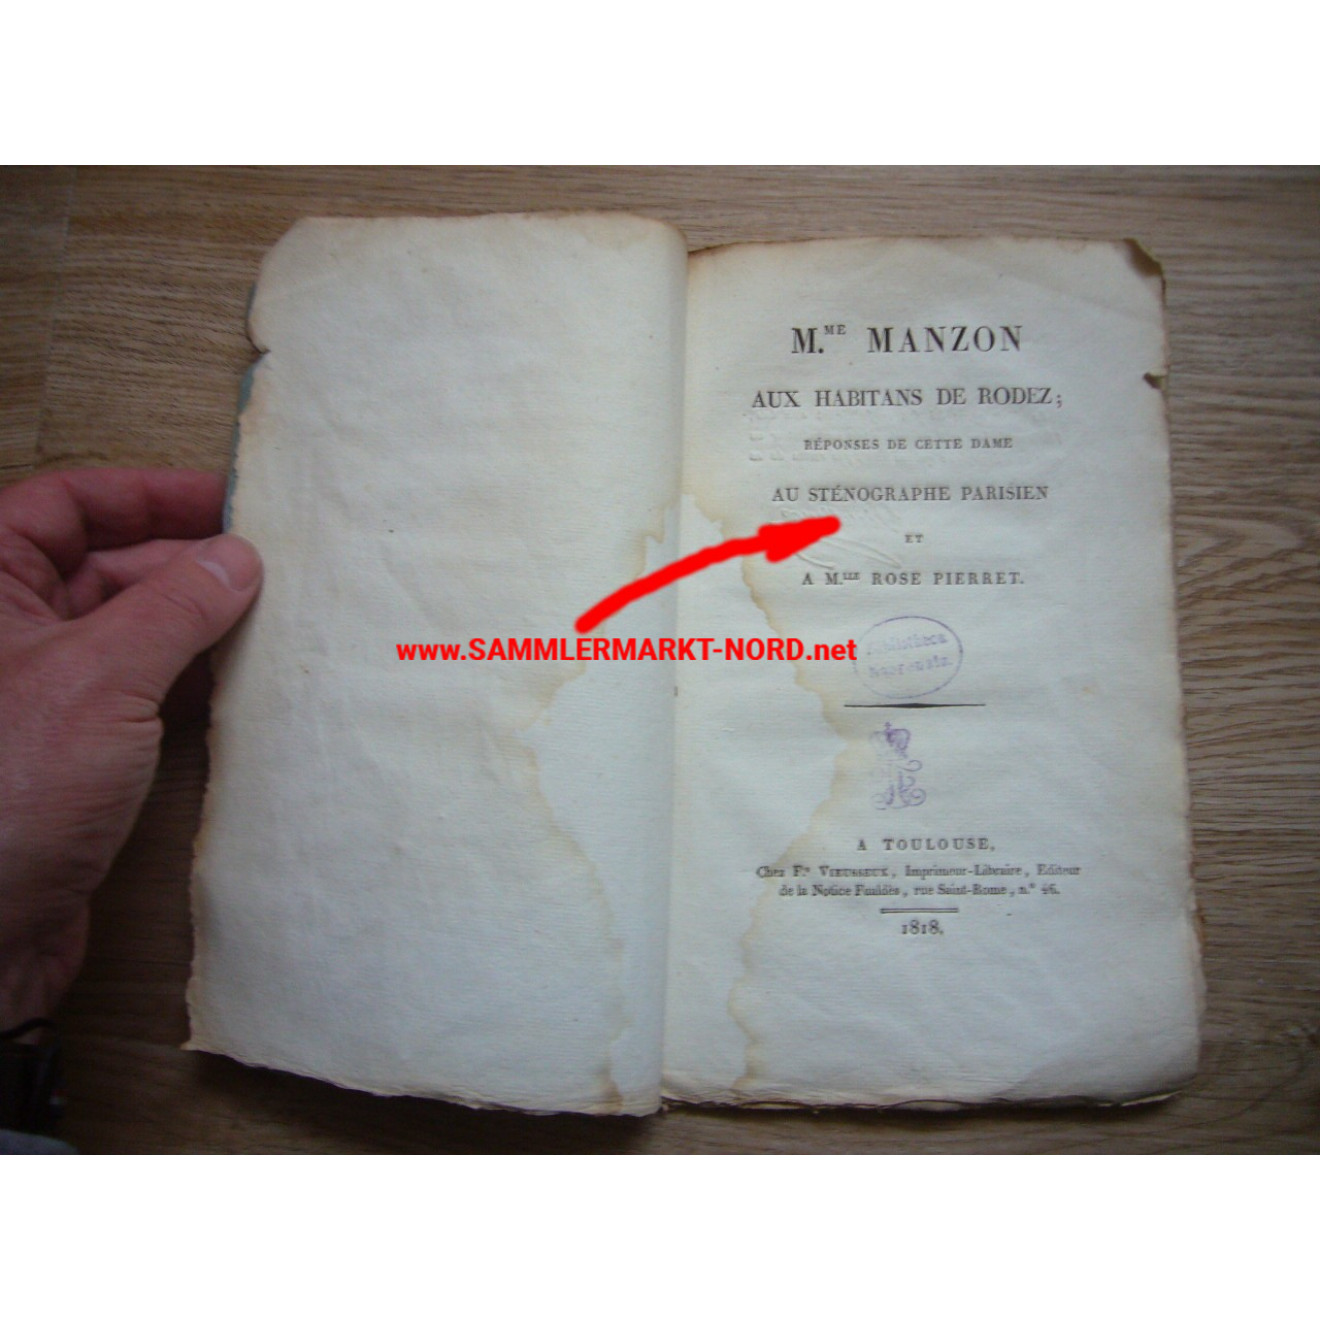 France - Booklet of 1818 - Shorthand - M. Me Manzon aux Habitans de Rodez